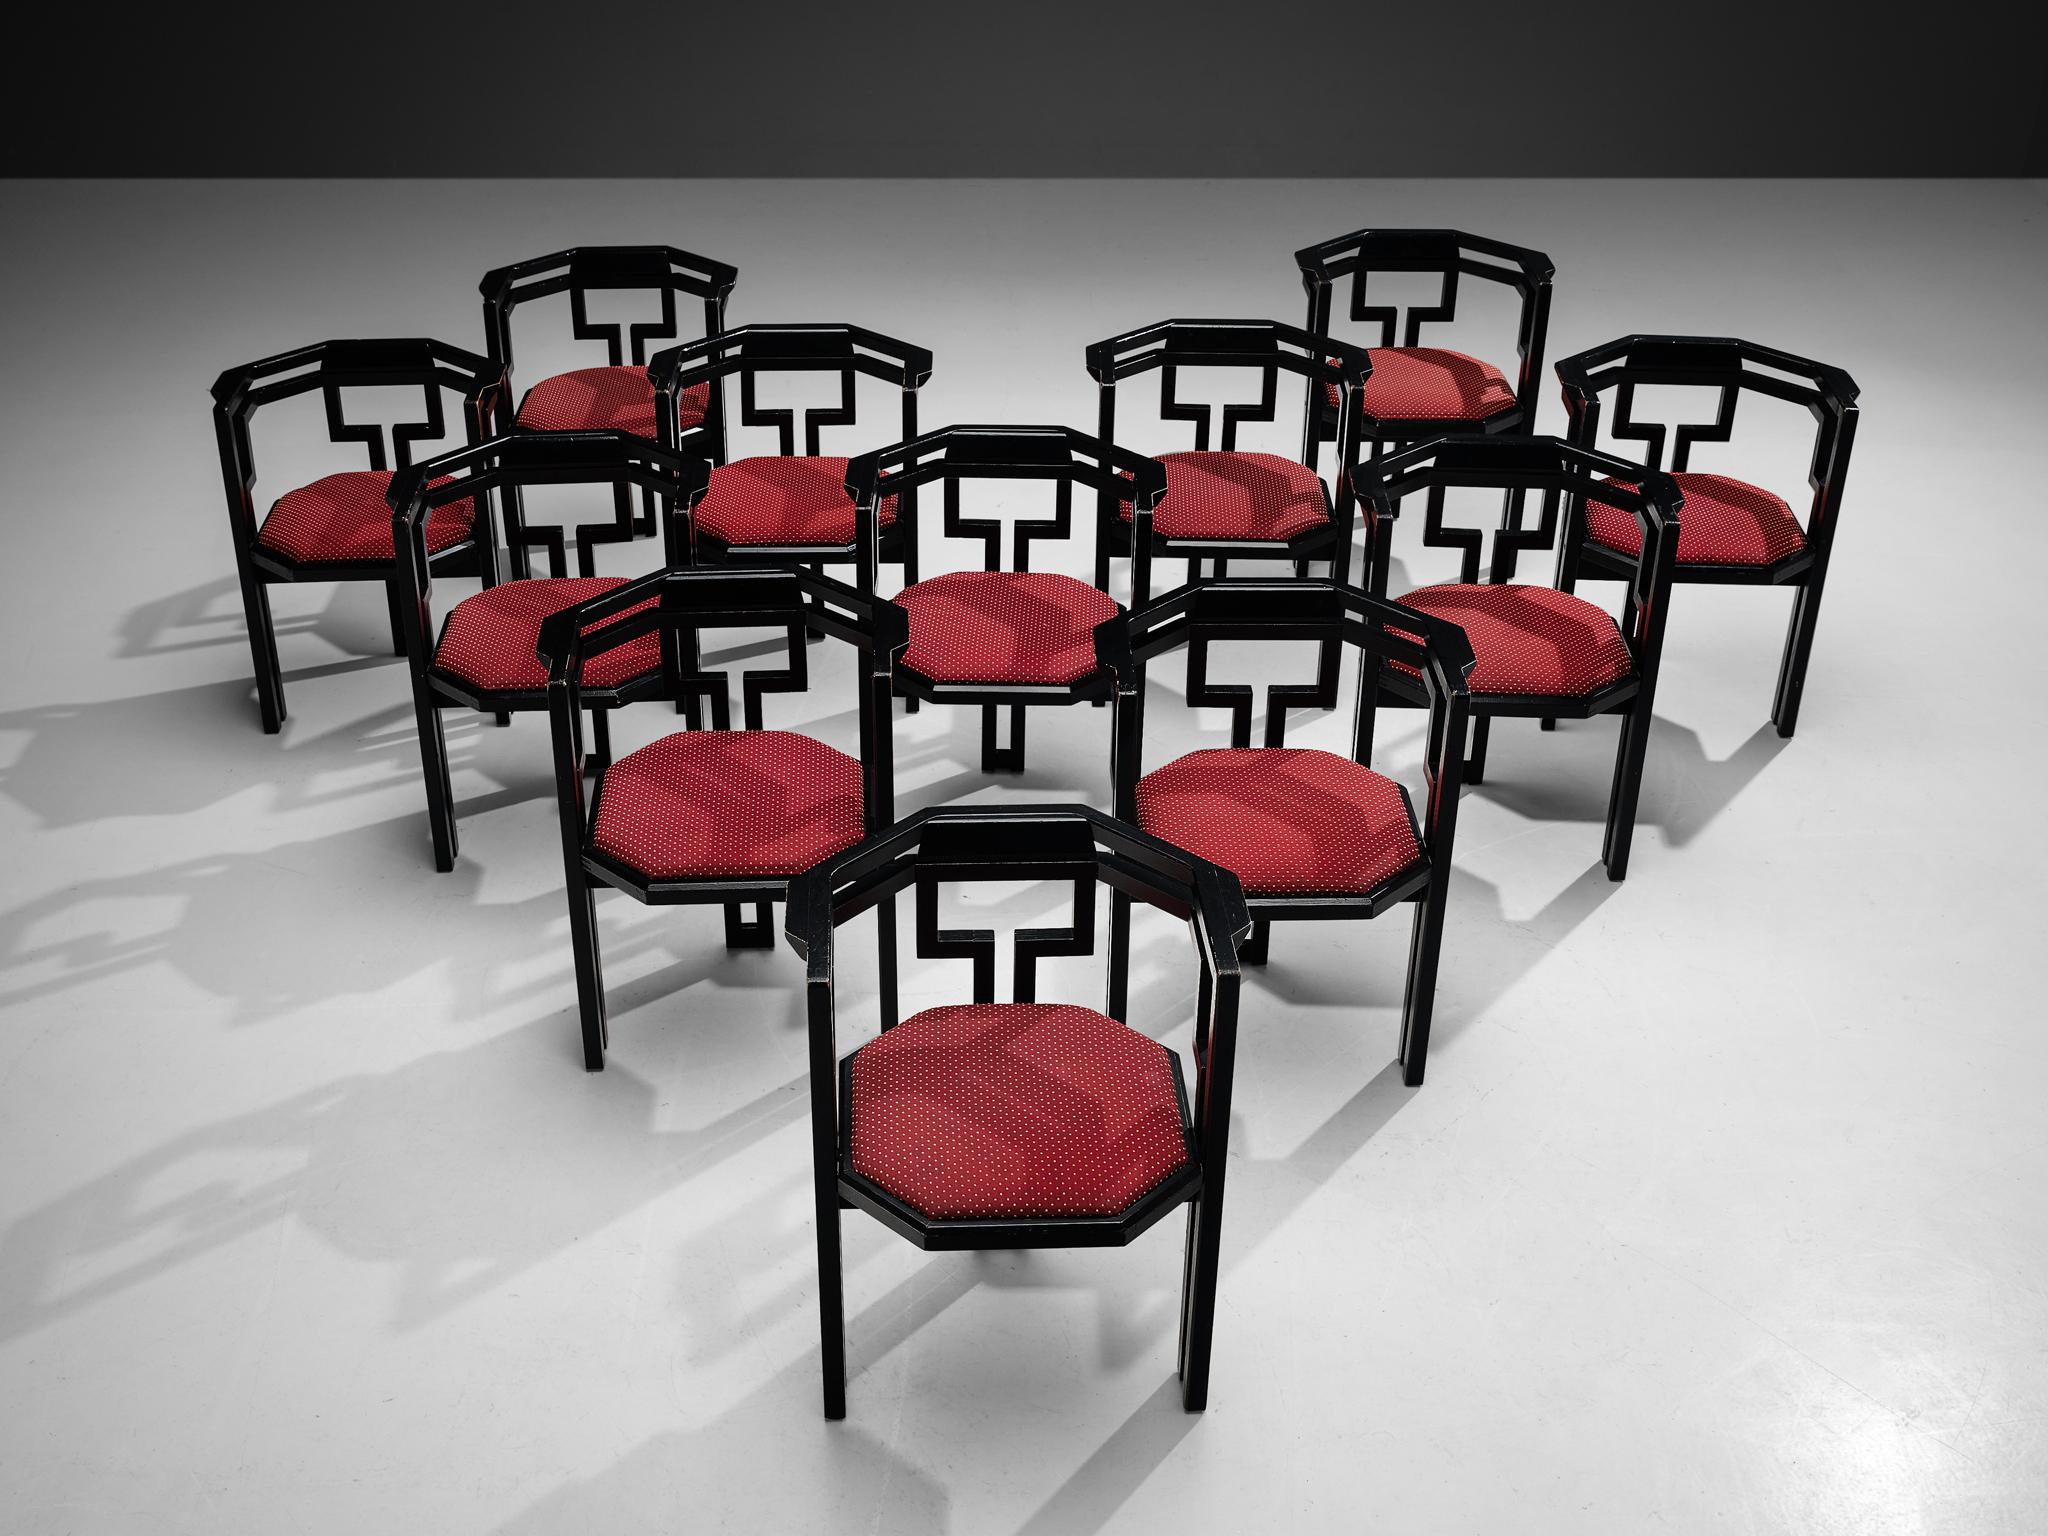 Ensemble de douze chaises de salle à manger, chêne laqué noir, tissu, Italie, années 1970.

Ensemble exceptionnel de douze chaises de salle à manger italiennes géométriques. Ces chaises combinent un design sculptural simple, mais très fort en termes